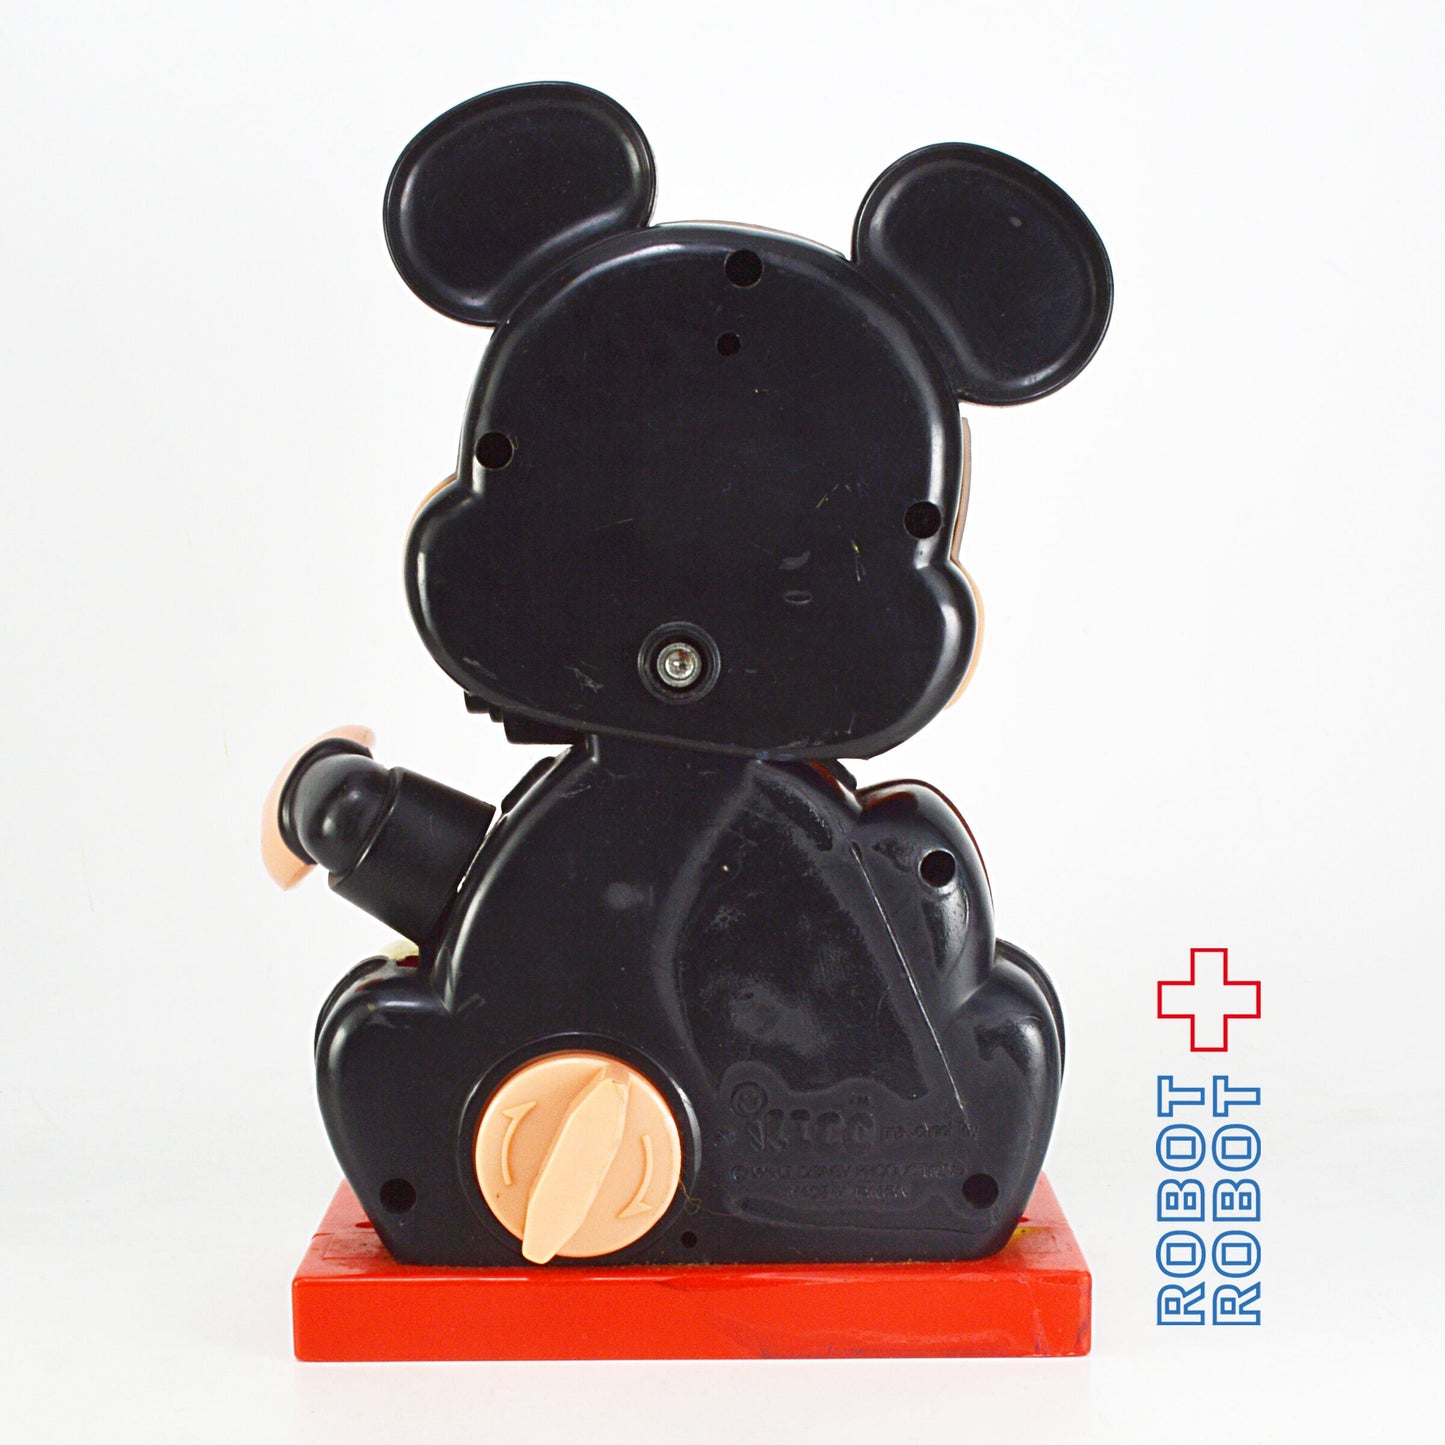 ミッキーマウス 時計のオモチャ イルコ社 MADE IN TAIWAN